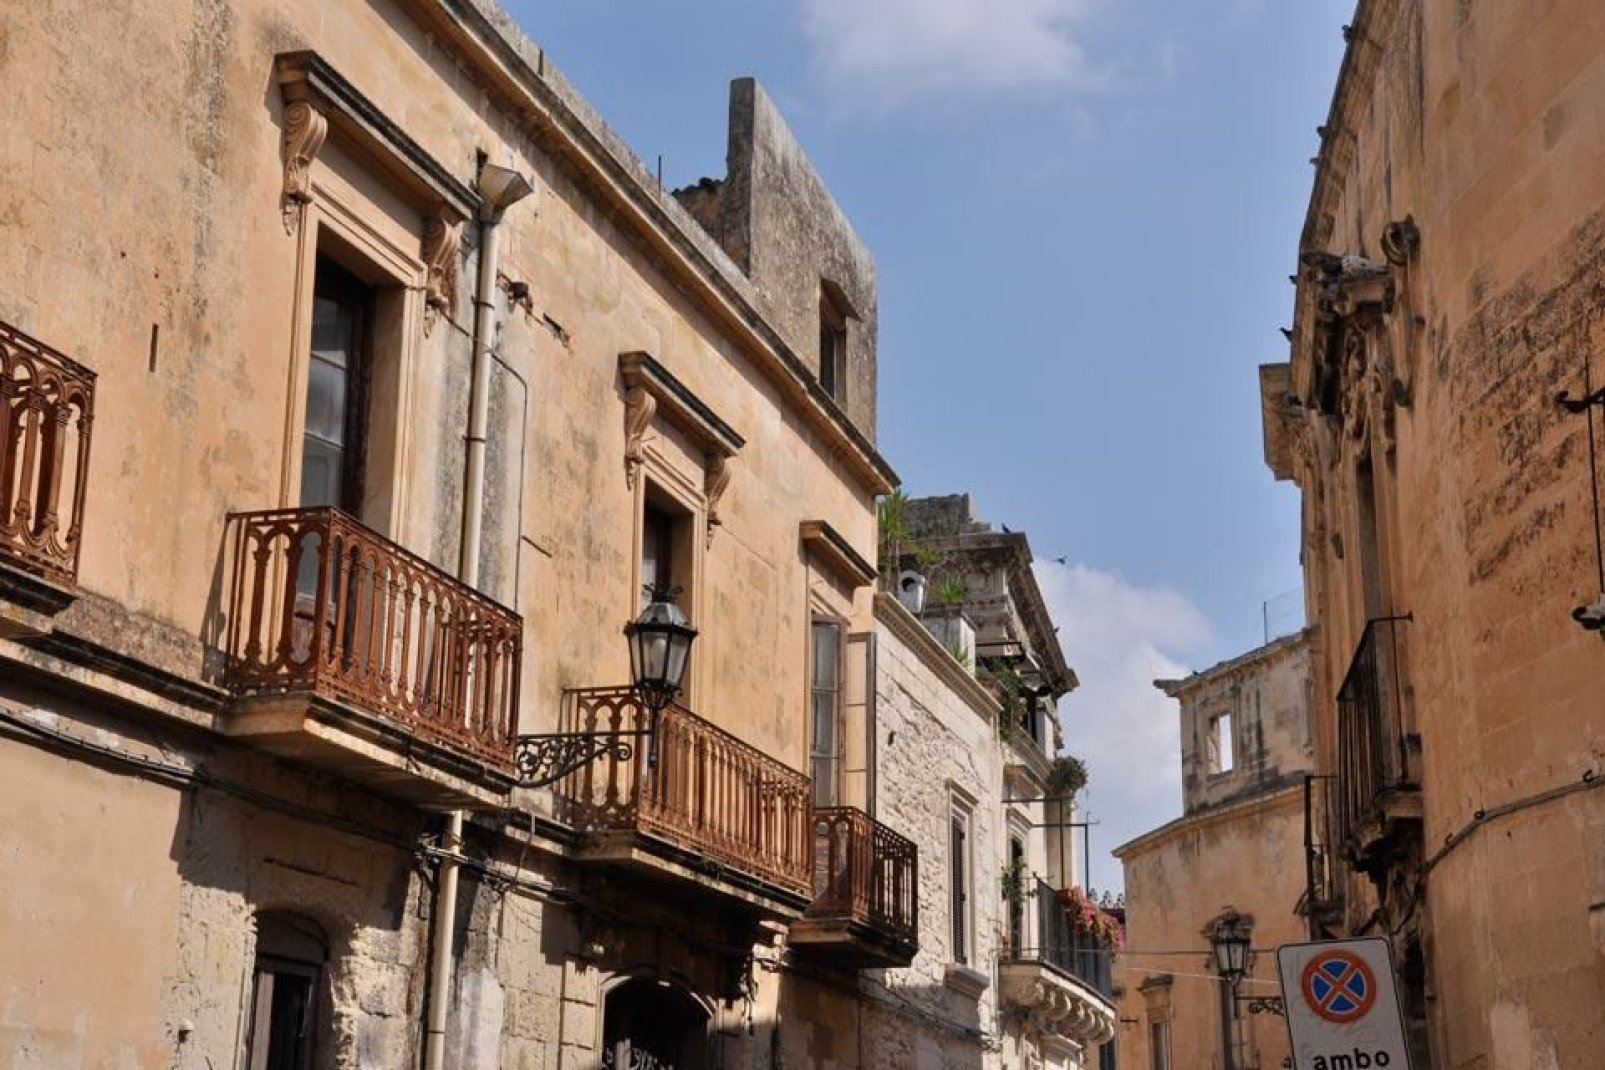 Die meisten Gebäude der Stadt bestehen aus dem sogenannten "Stein von Lecce", der sich durch seine spröde Konsistenz und die warmen Farben auszeichnet.